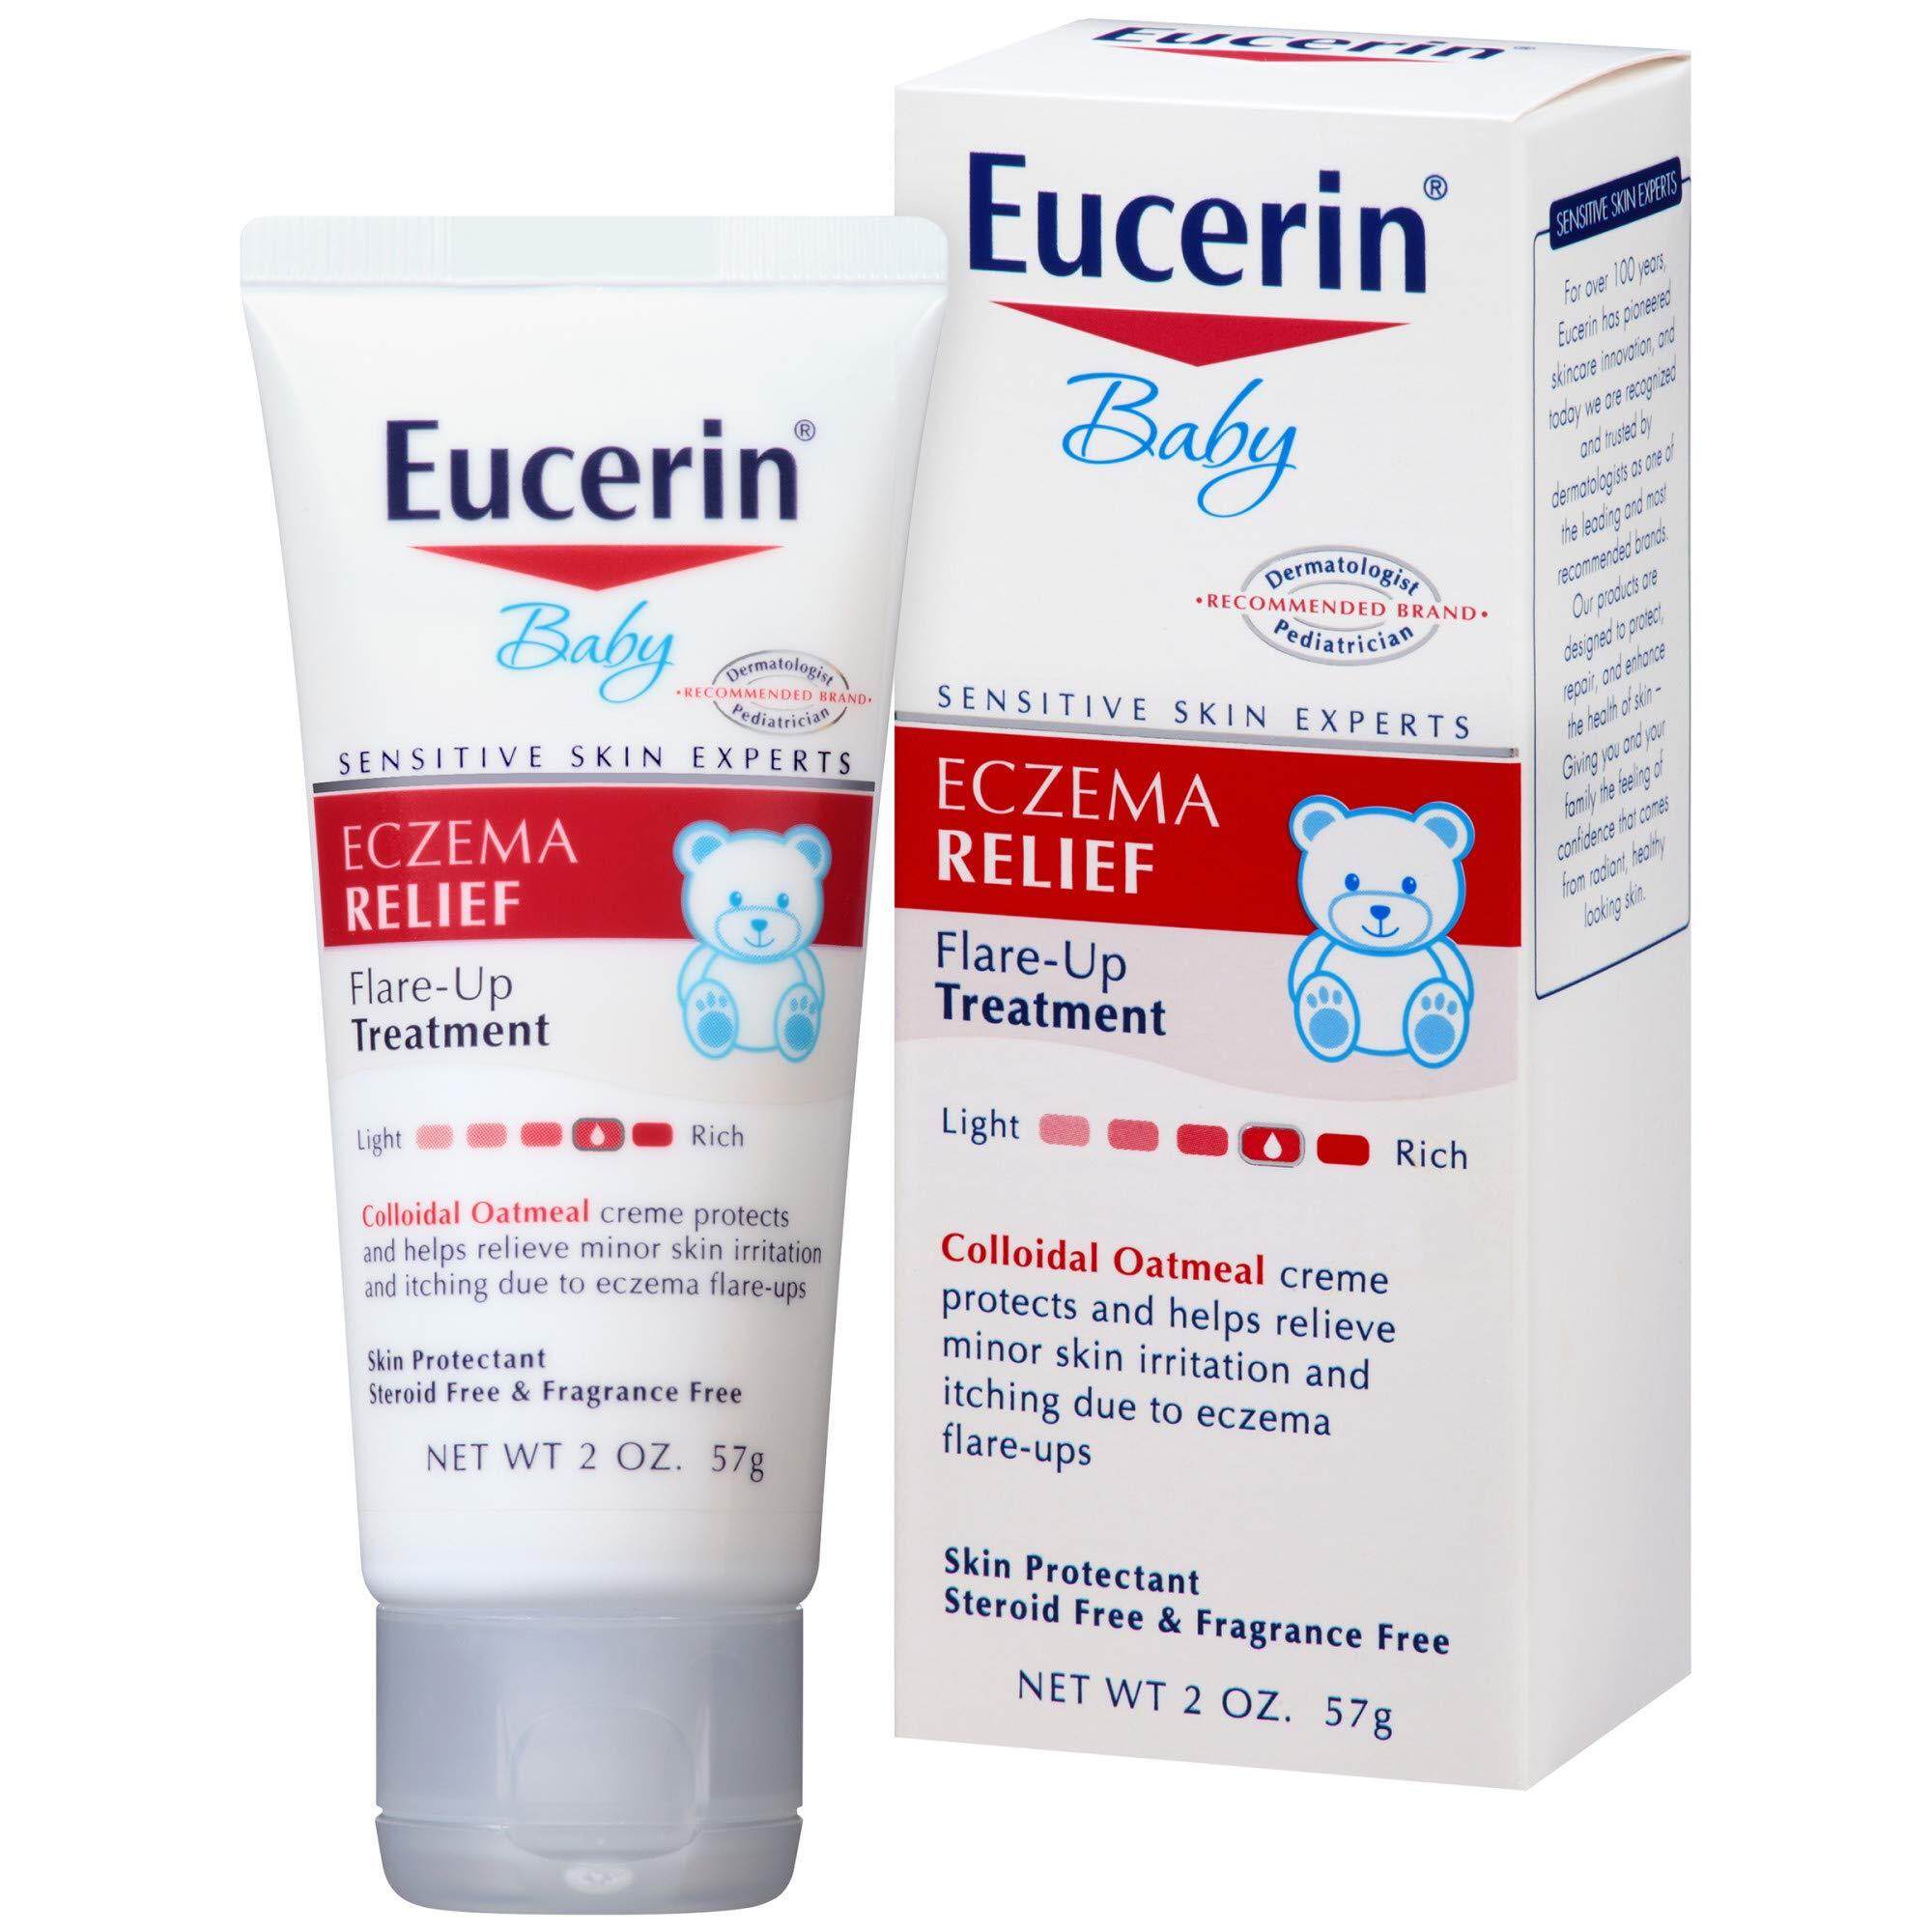 Eucerin Baby Eczema Relief Flare-up Treatment 57ml. ยูเซอรีน เบบี้ รีลิฟ ครีม บำรุงผิวเด็กและผิวบอบบาง